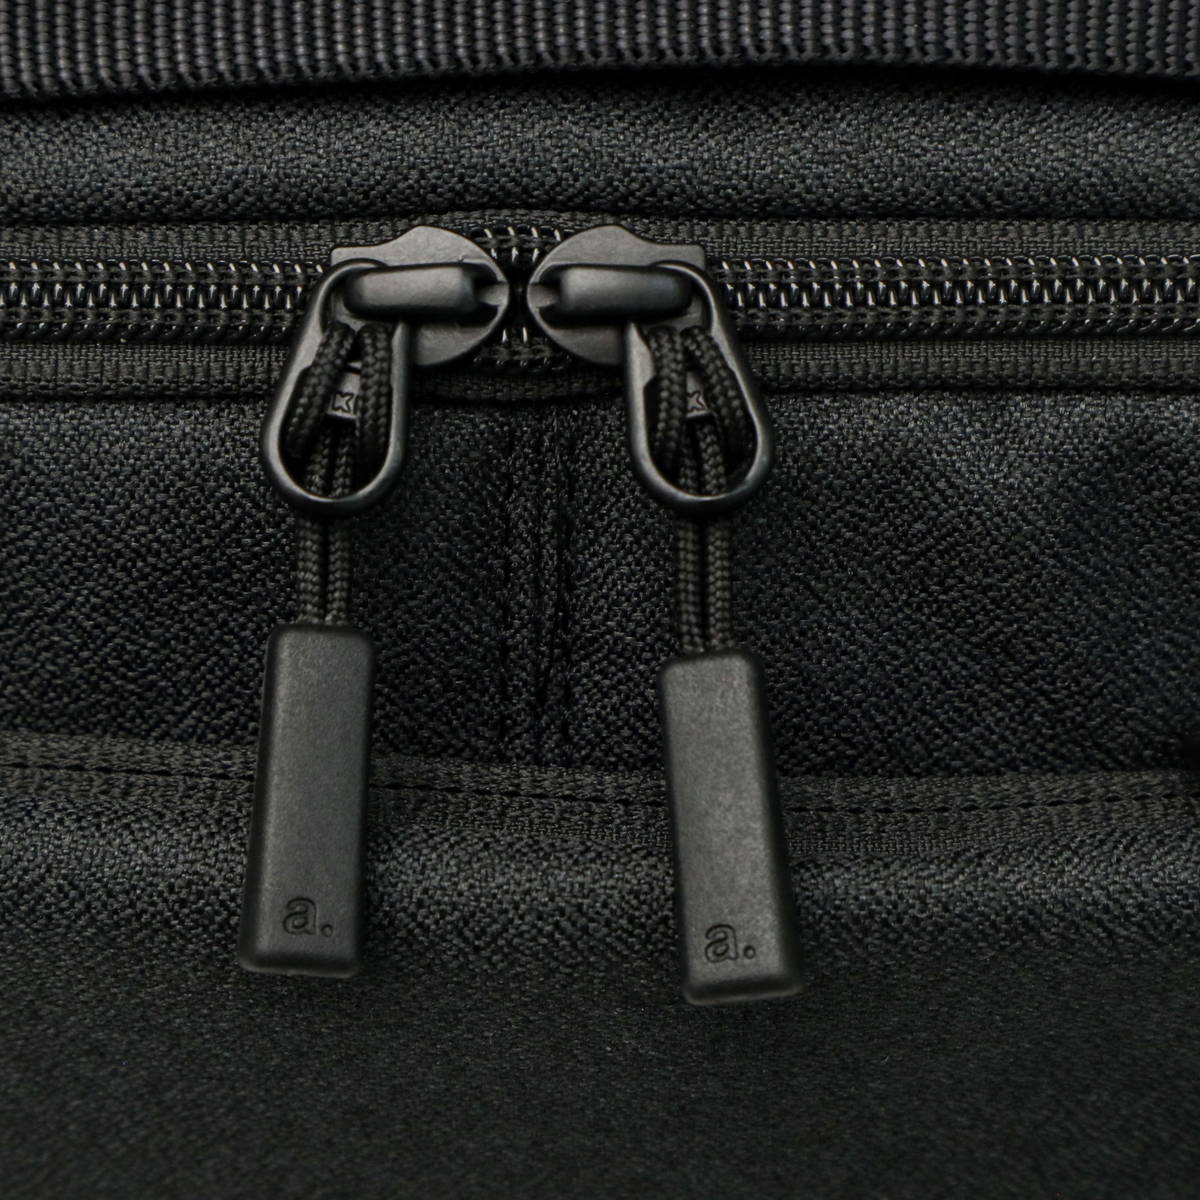 エバニュー [エースジーン] ボディバッグ 撥水加工 A4 11インチタブレット対応 ハンスリーSD マルチアクセスポケット メンズ - バッグ